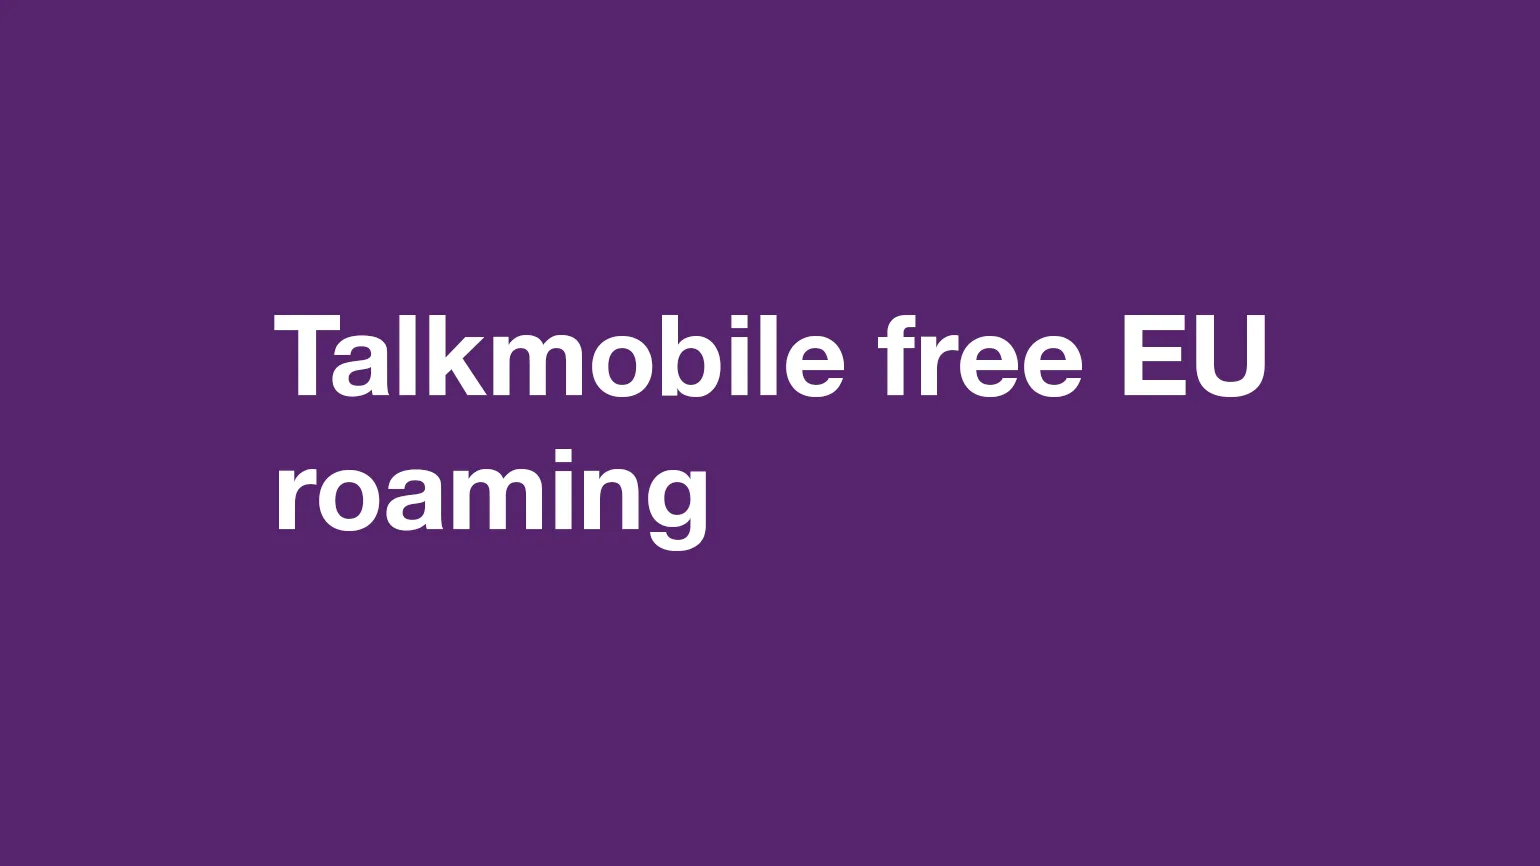 Talkmobile EU roaming - after Brexit